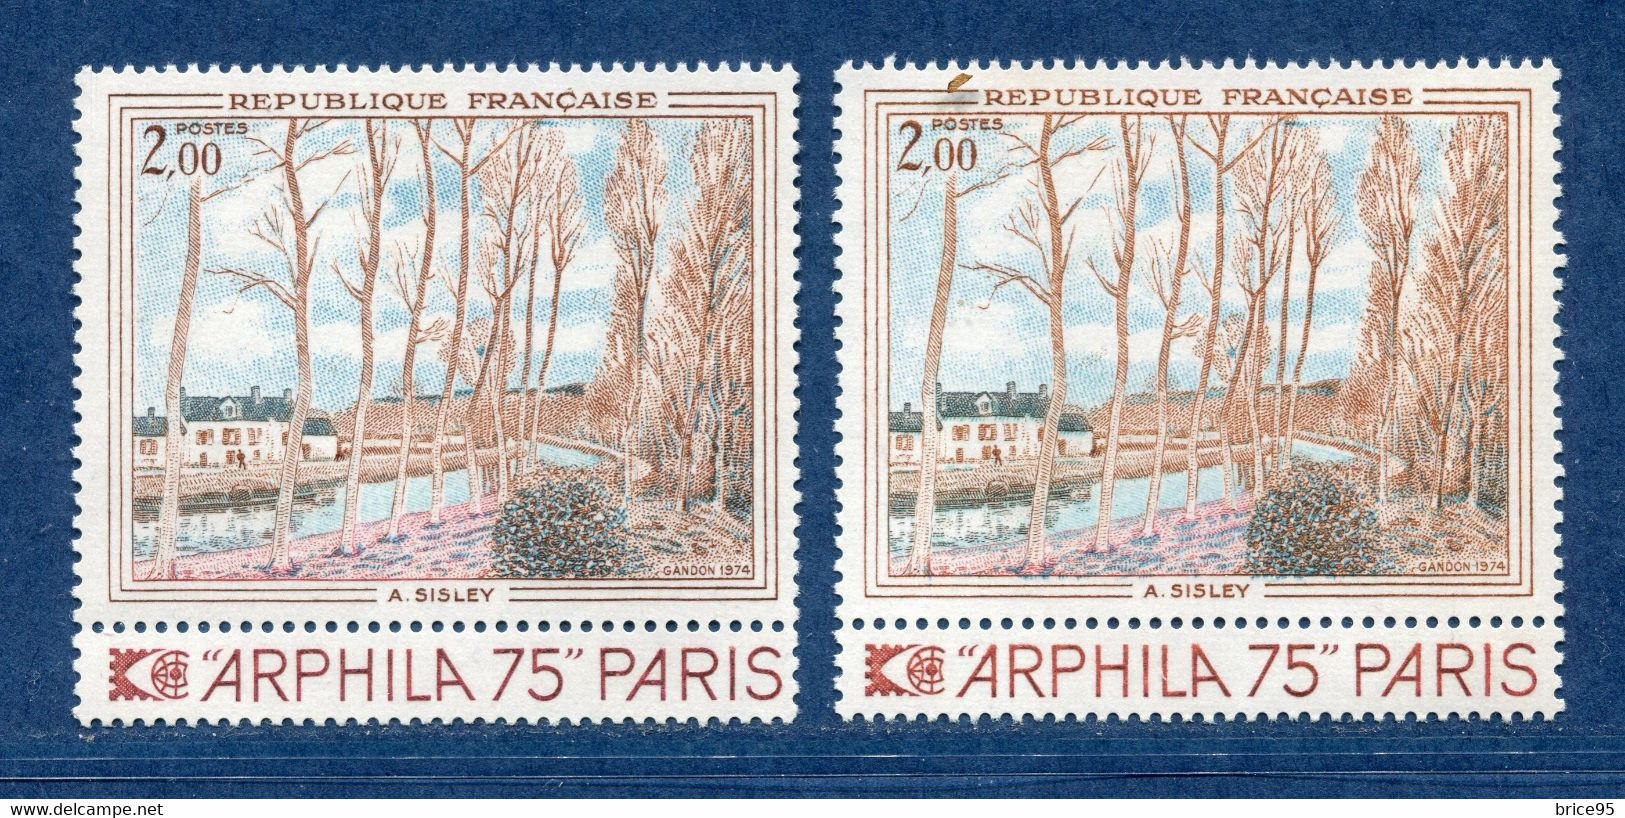 ⭐ France - Variété - YT N° 1812 - Couleurs - Pétouilles - Neuf Sans Charnière - 1974 ⭐ - Unused Stamps